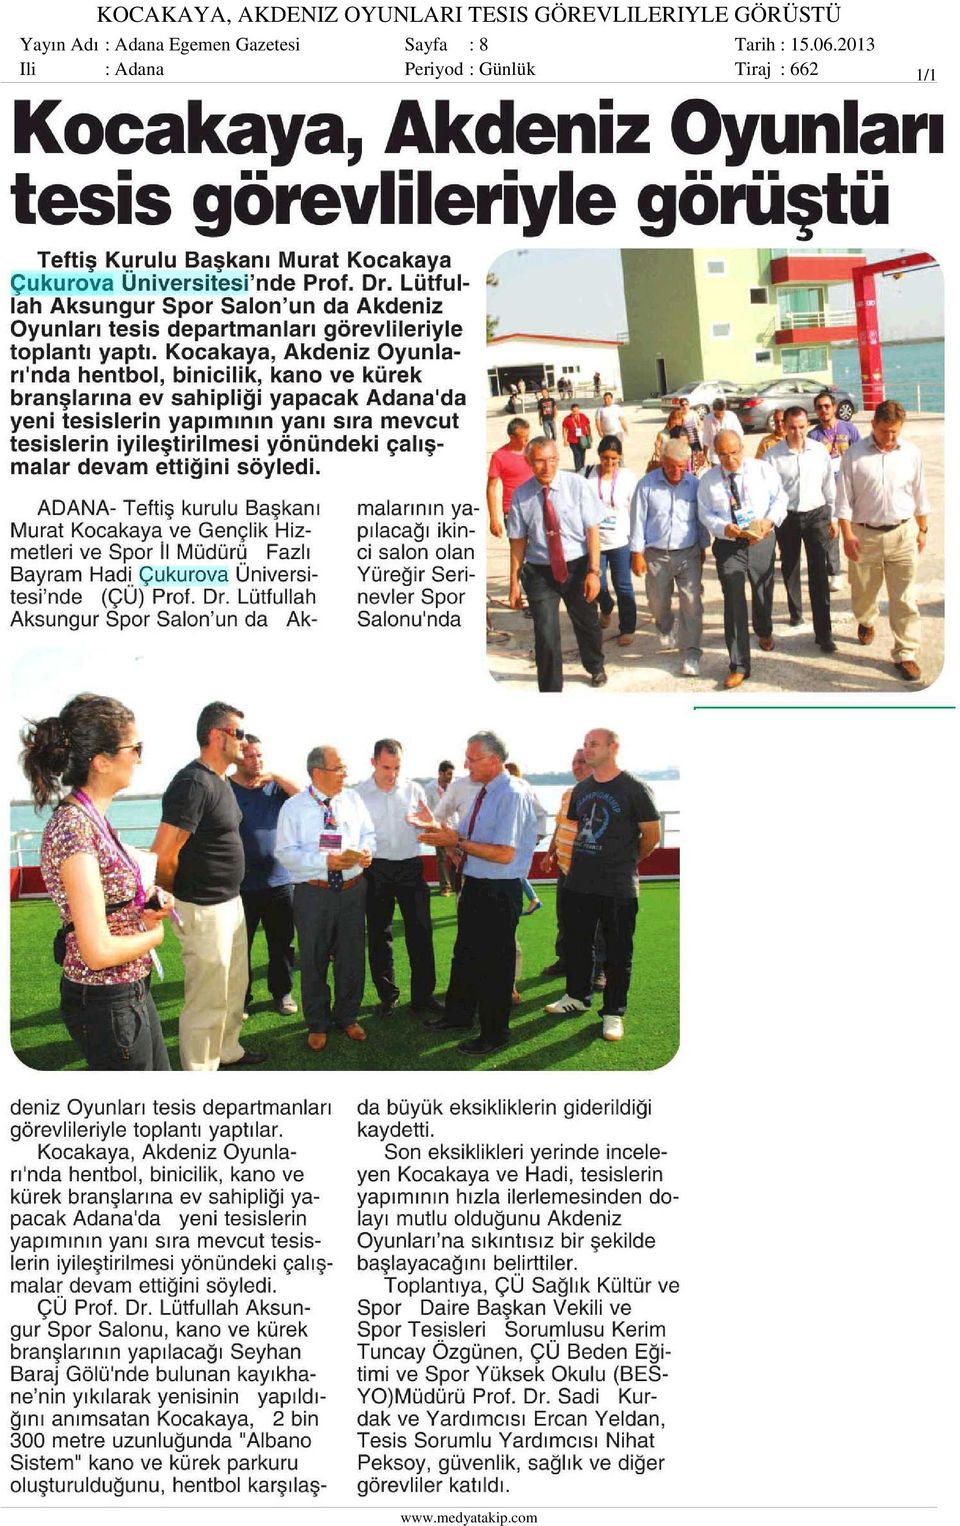 Adana Egemen Gazetesi Sayfa : 8 Ili